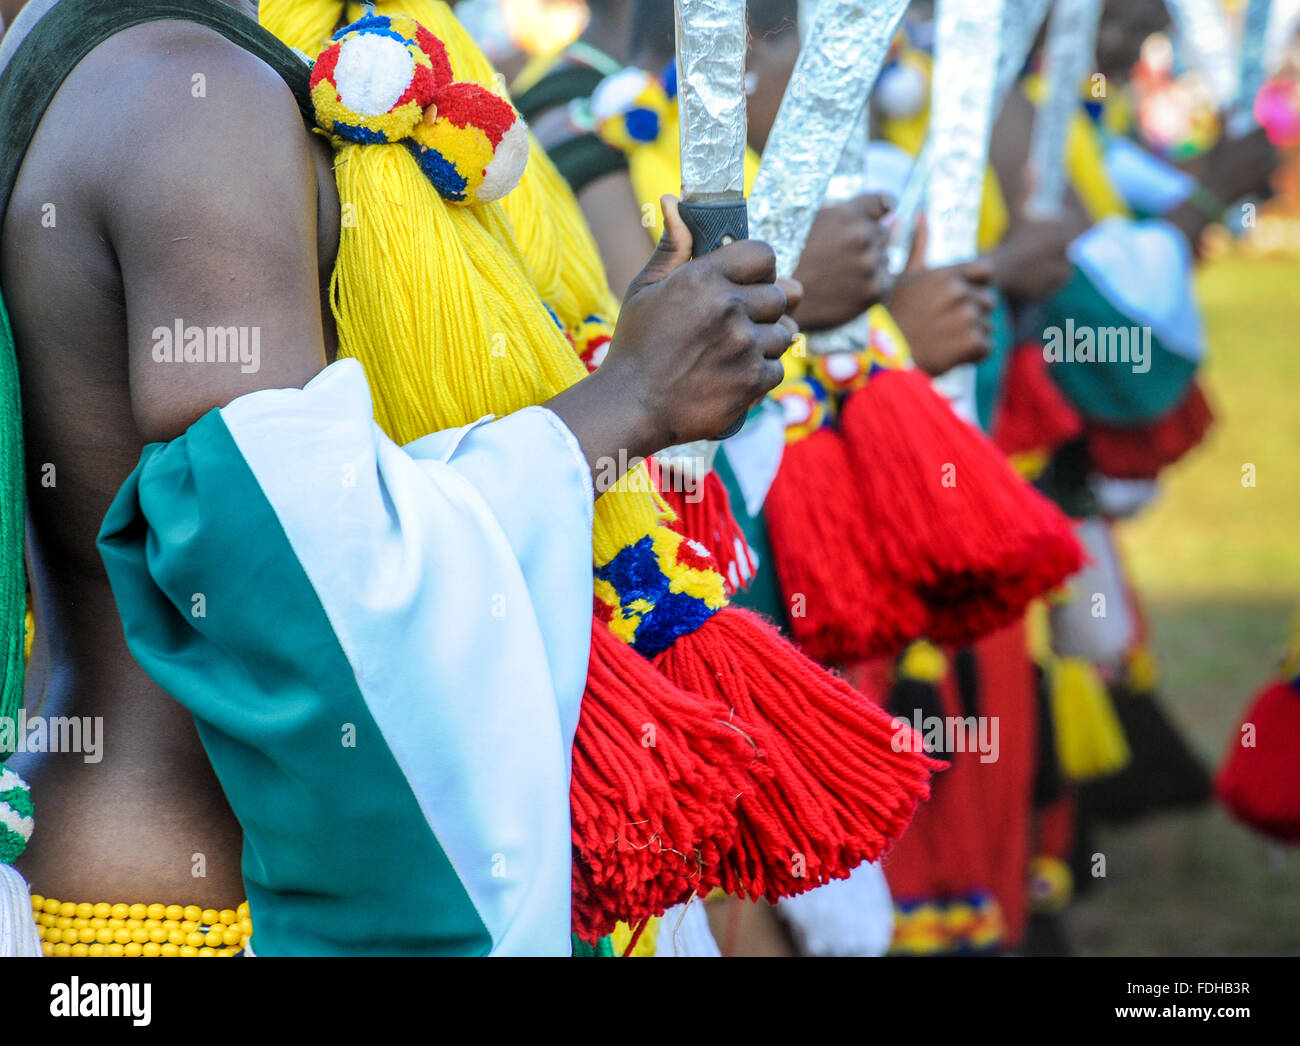 Ludzidzini, Swaziland, Afrique du Sud - Umhlanga Swazi, ou cérémonie danse reed, 100 000 jeunes filles ou femmes célibataires ,, célébrer thei Banque D'Images